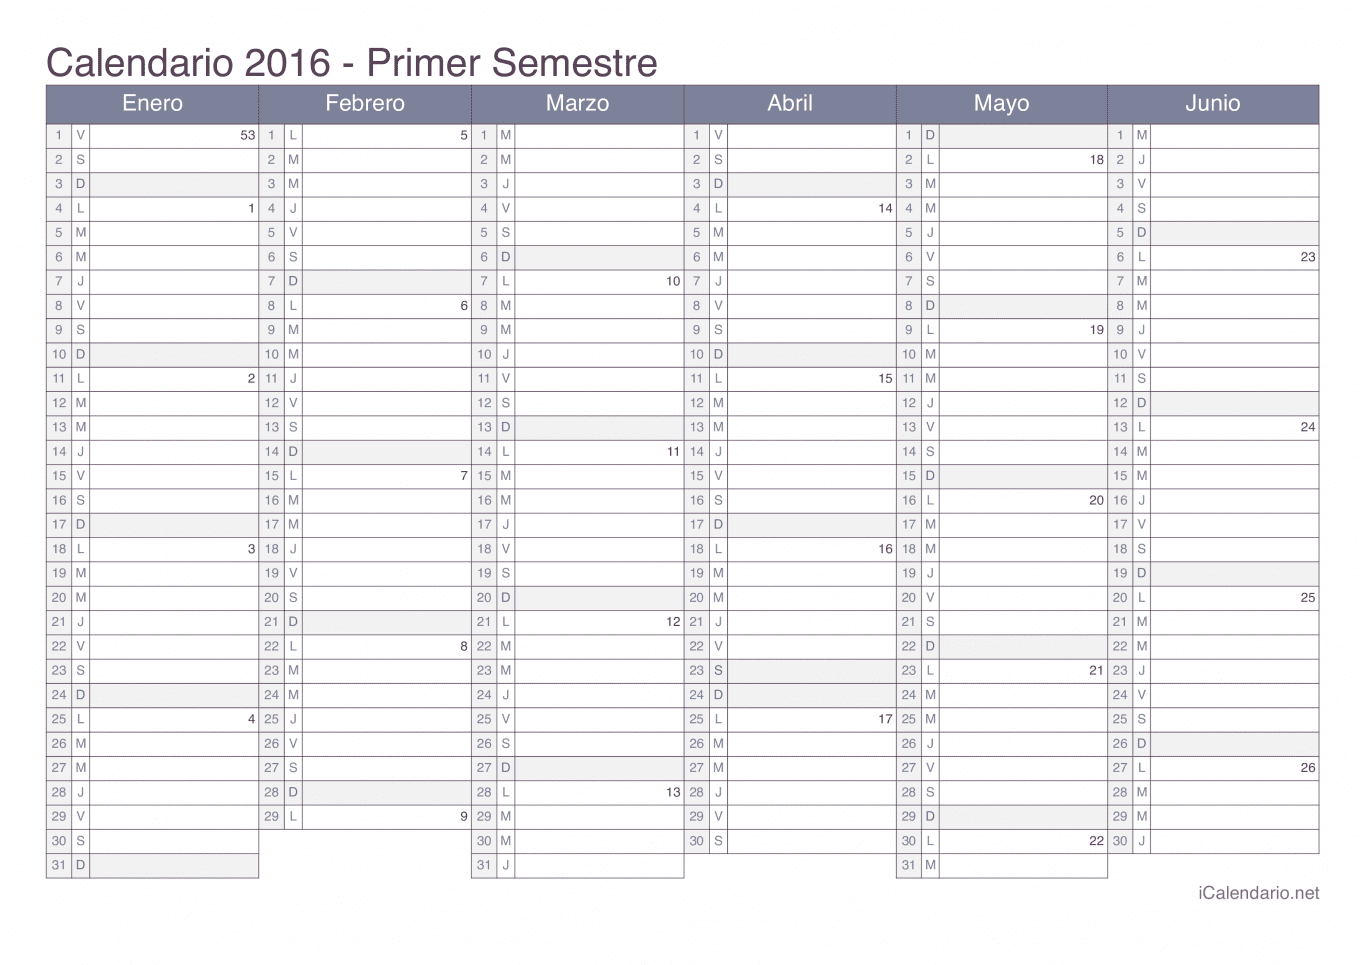 Calendario por semestre com números da semana 2016 - Office